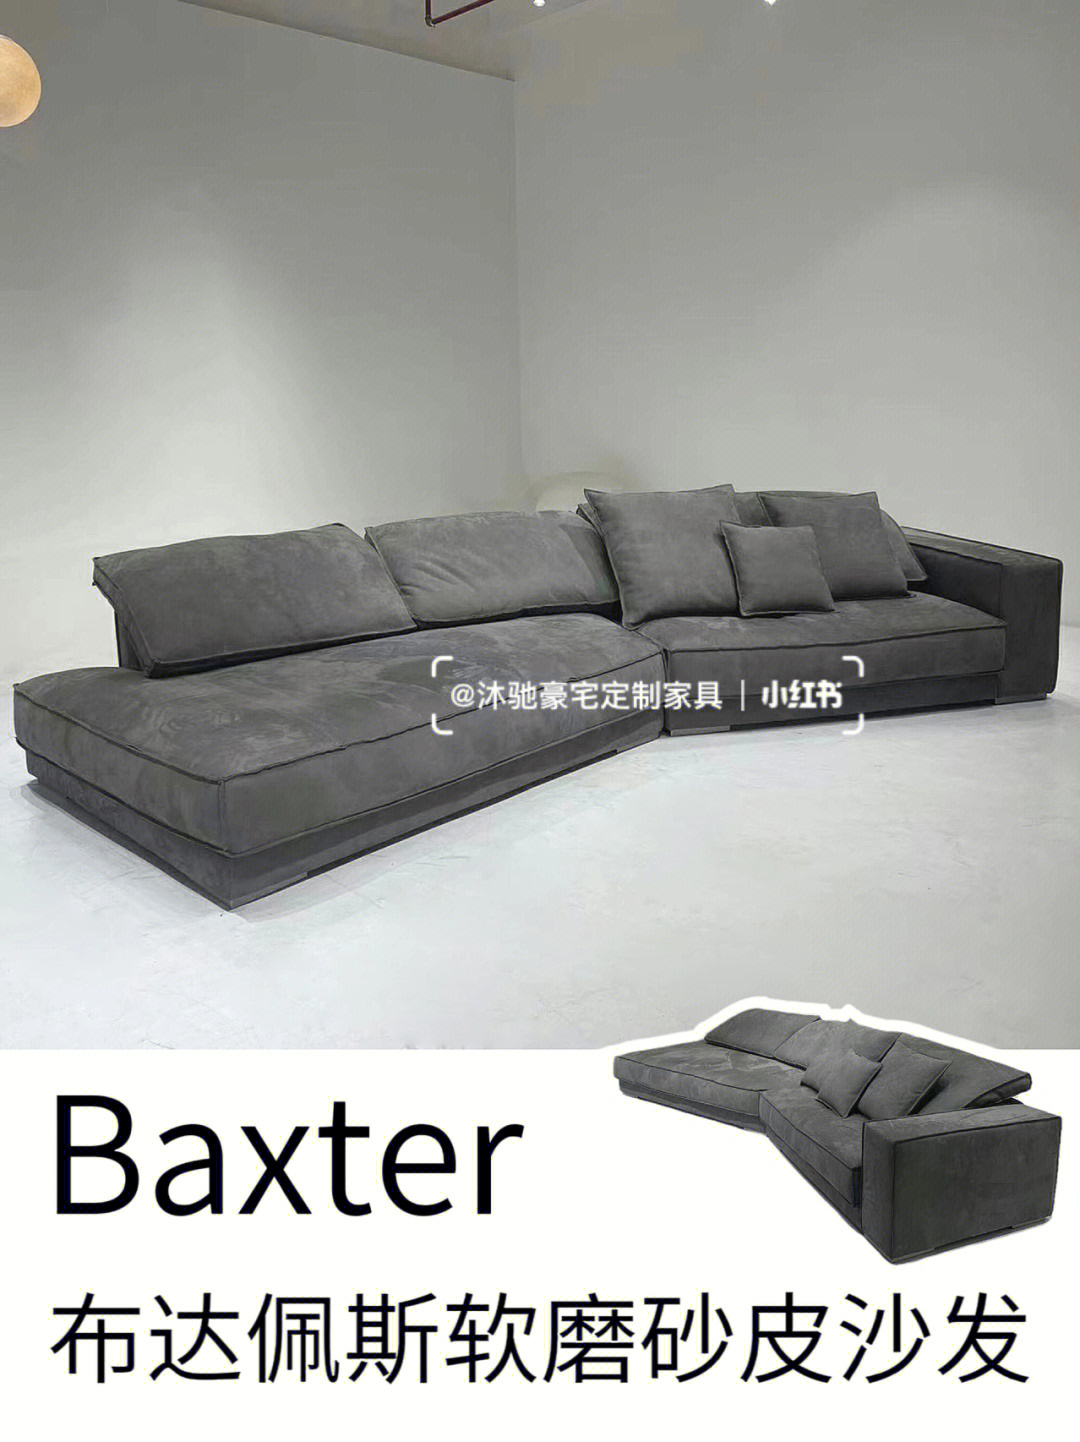 baxter中文图片